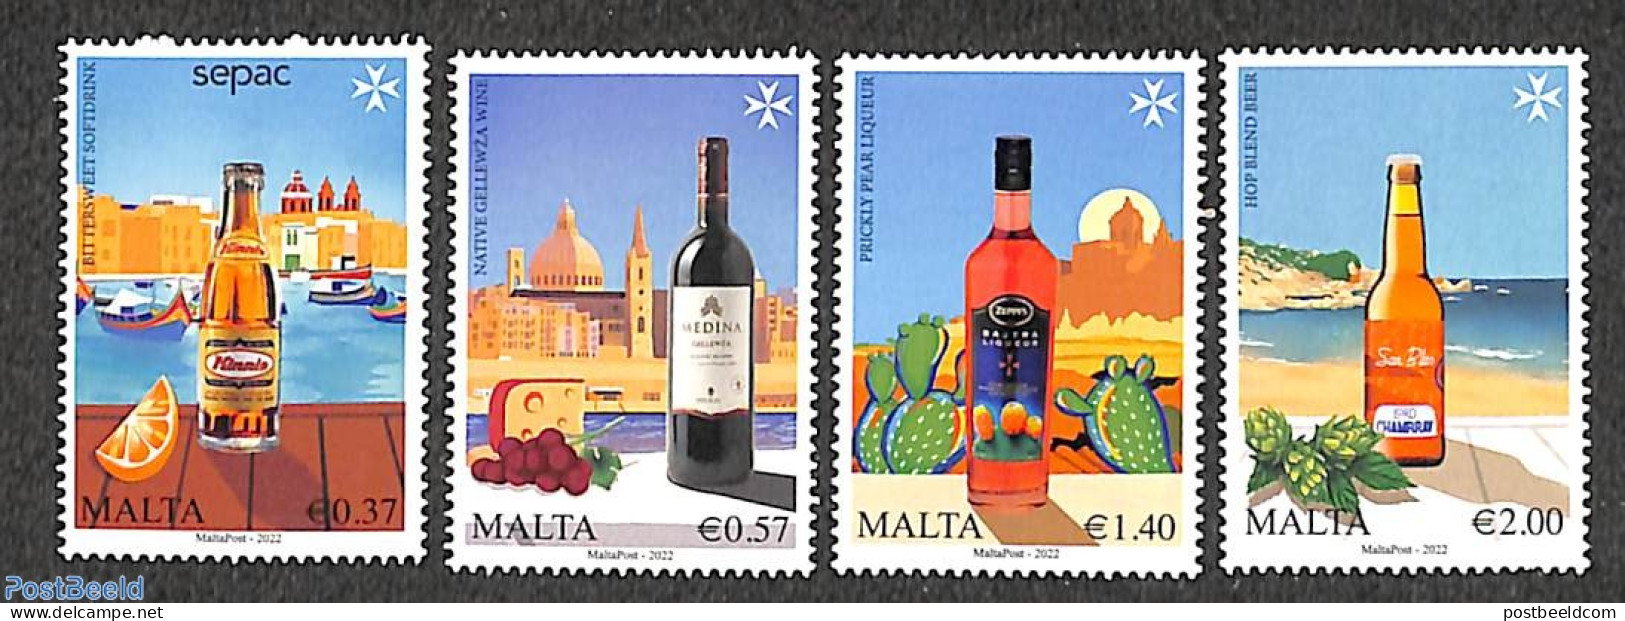 Malta 2022 SEPAC, Local Beverages 4v, Mint NH, Health - History - Nature - Transport - Food & Drink - Sepac - Cacti - .. - Levensmiddelen